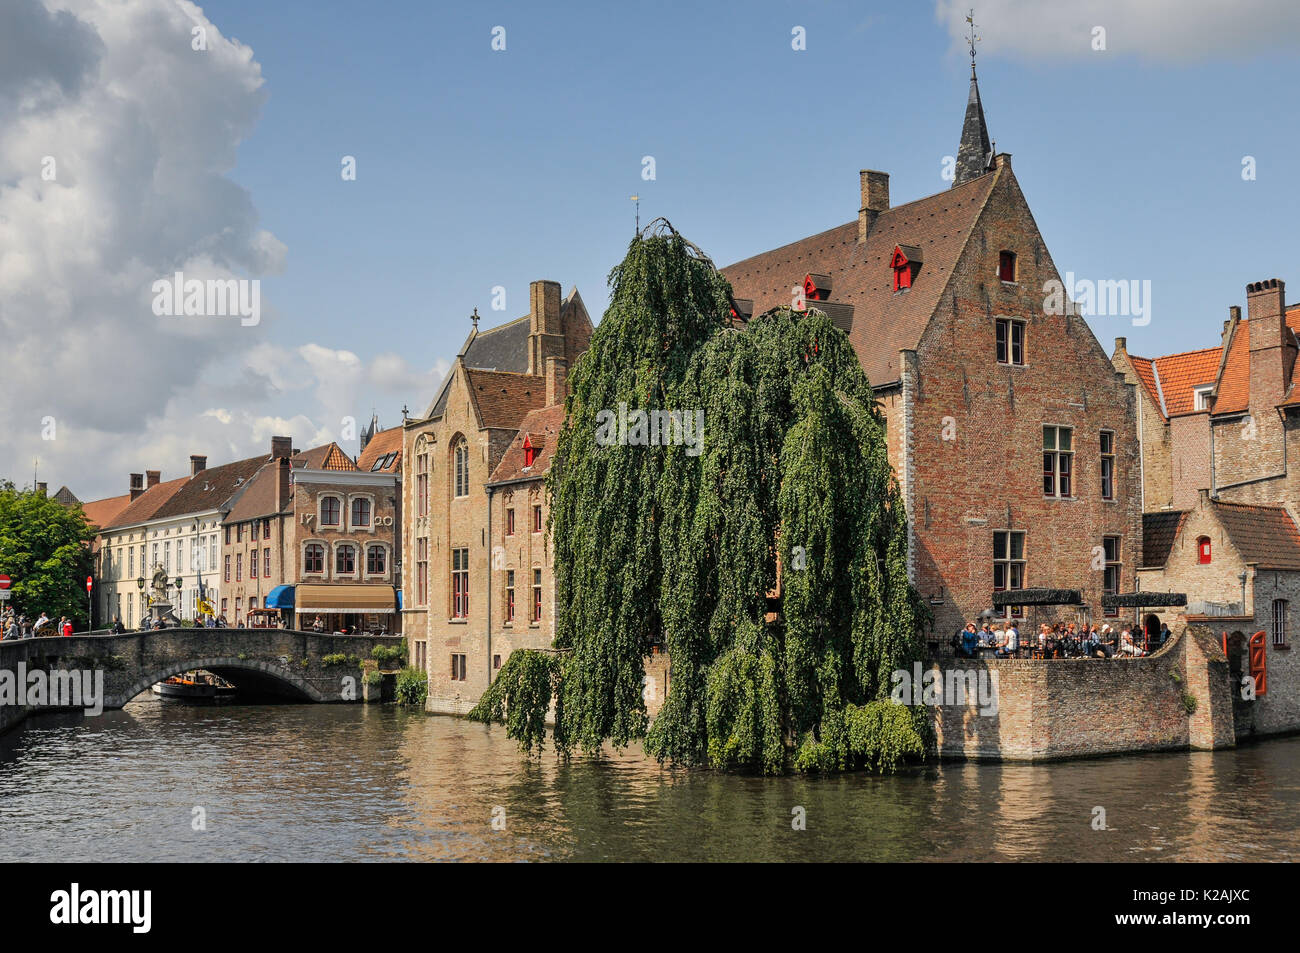 La vista dalla rosenhoedkaai dal subacqueo nella città medievale di Brugge / Bruges in Belgio su una soleggiata giornata estiva con i turisti in un bar terrazza Foto Stock